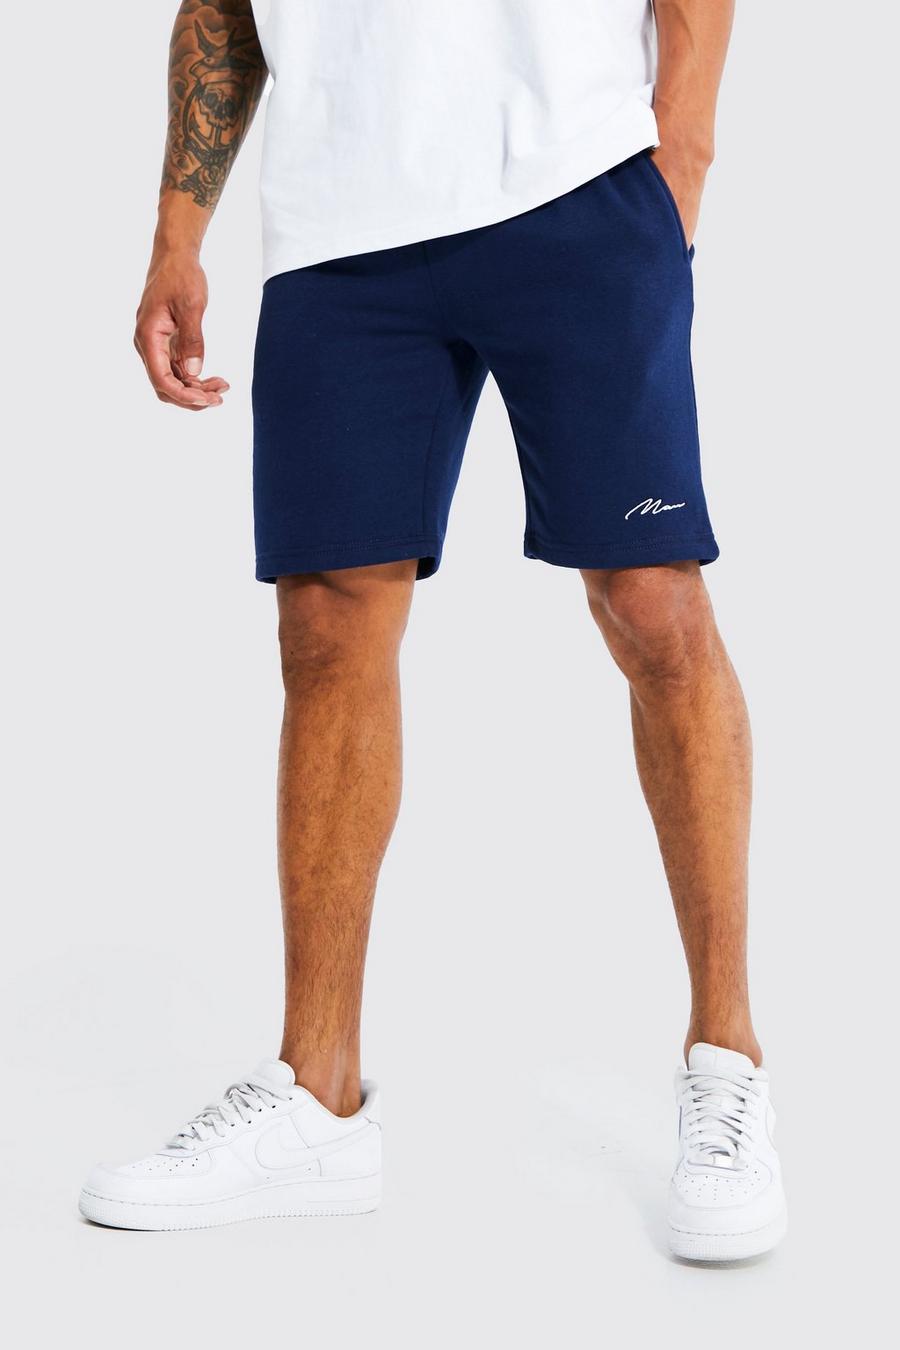 Pantalón corto ajustado de tela jersey con firma MAN, Navy blu oltremare